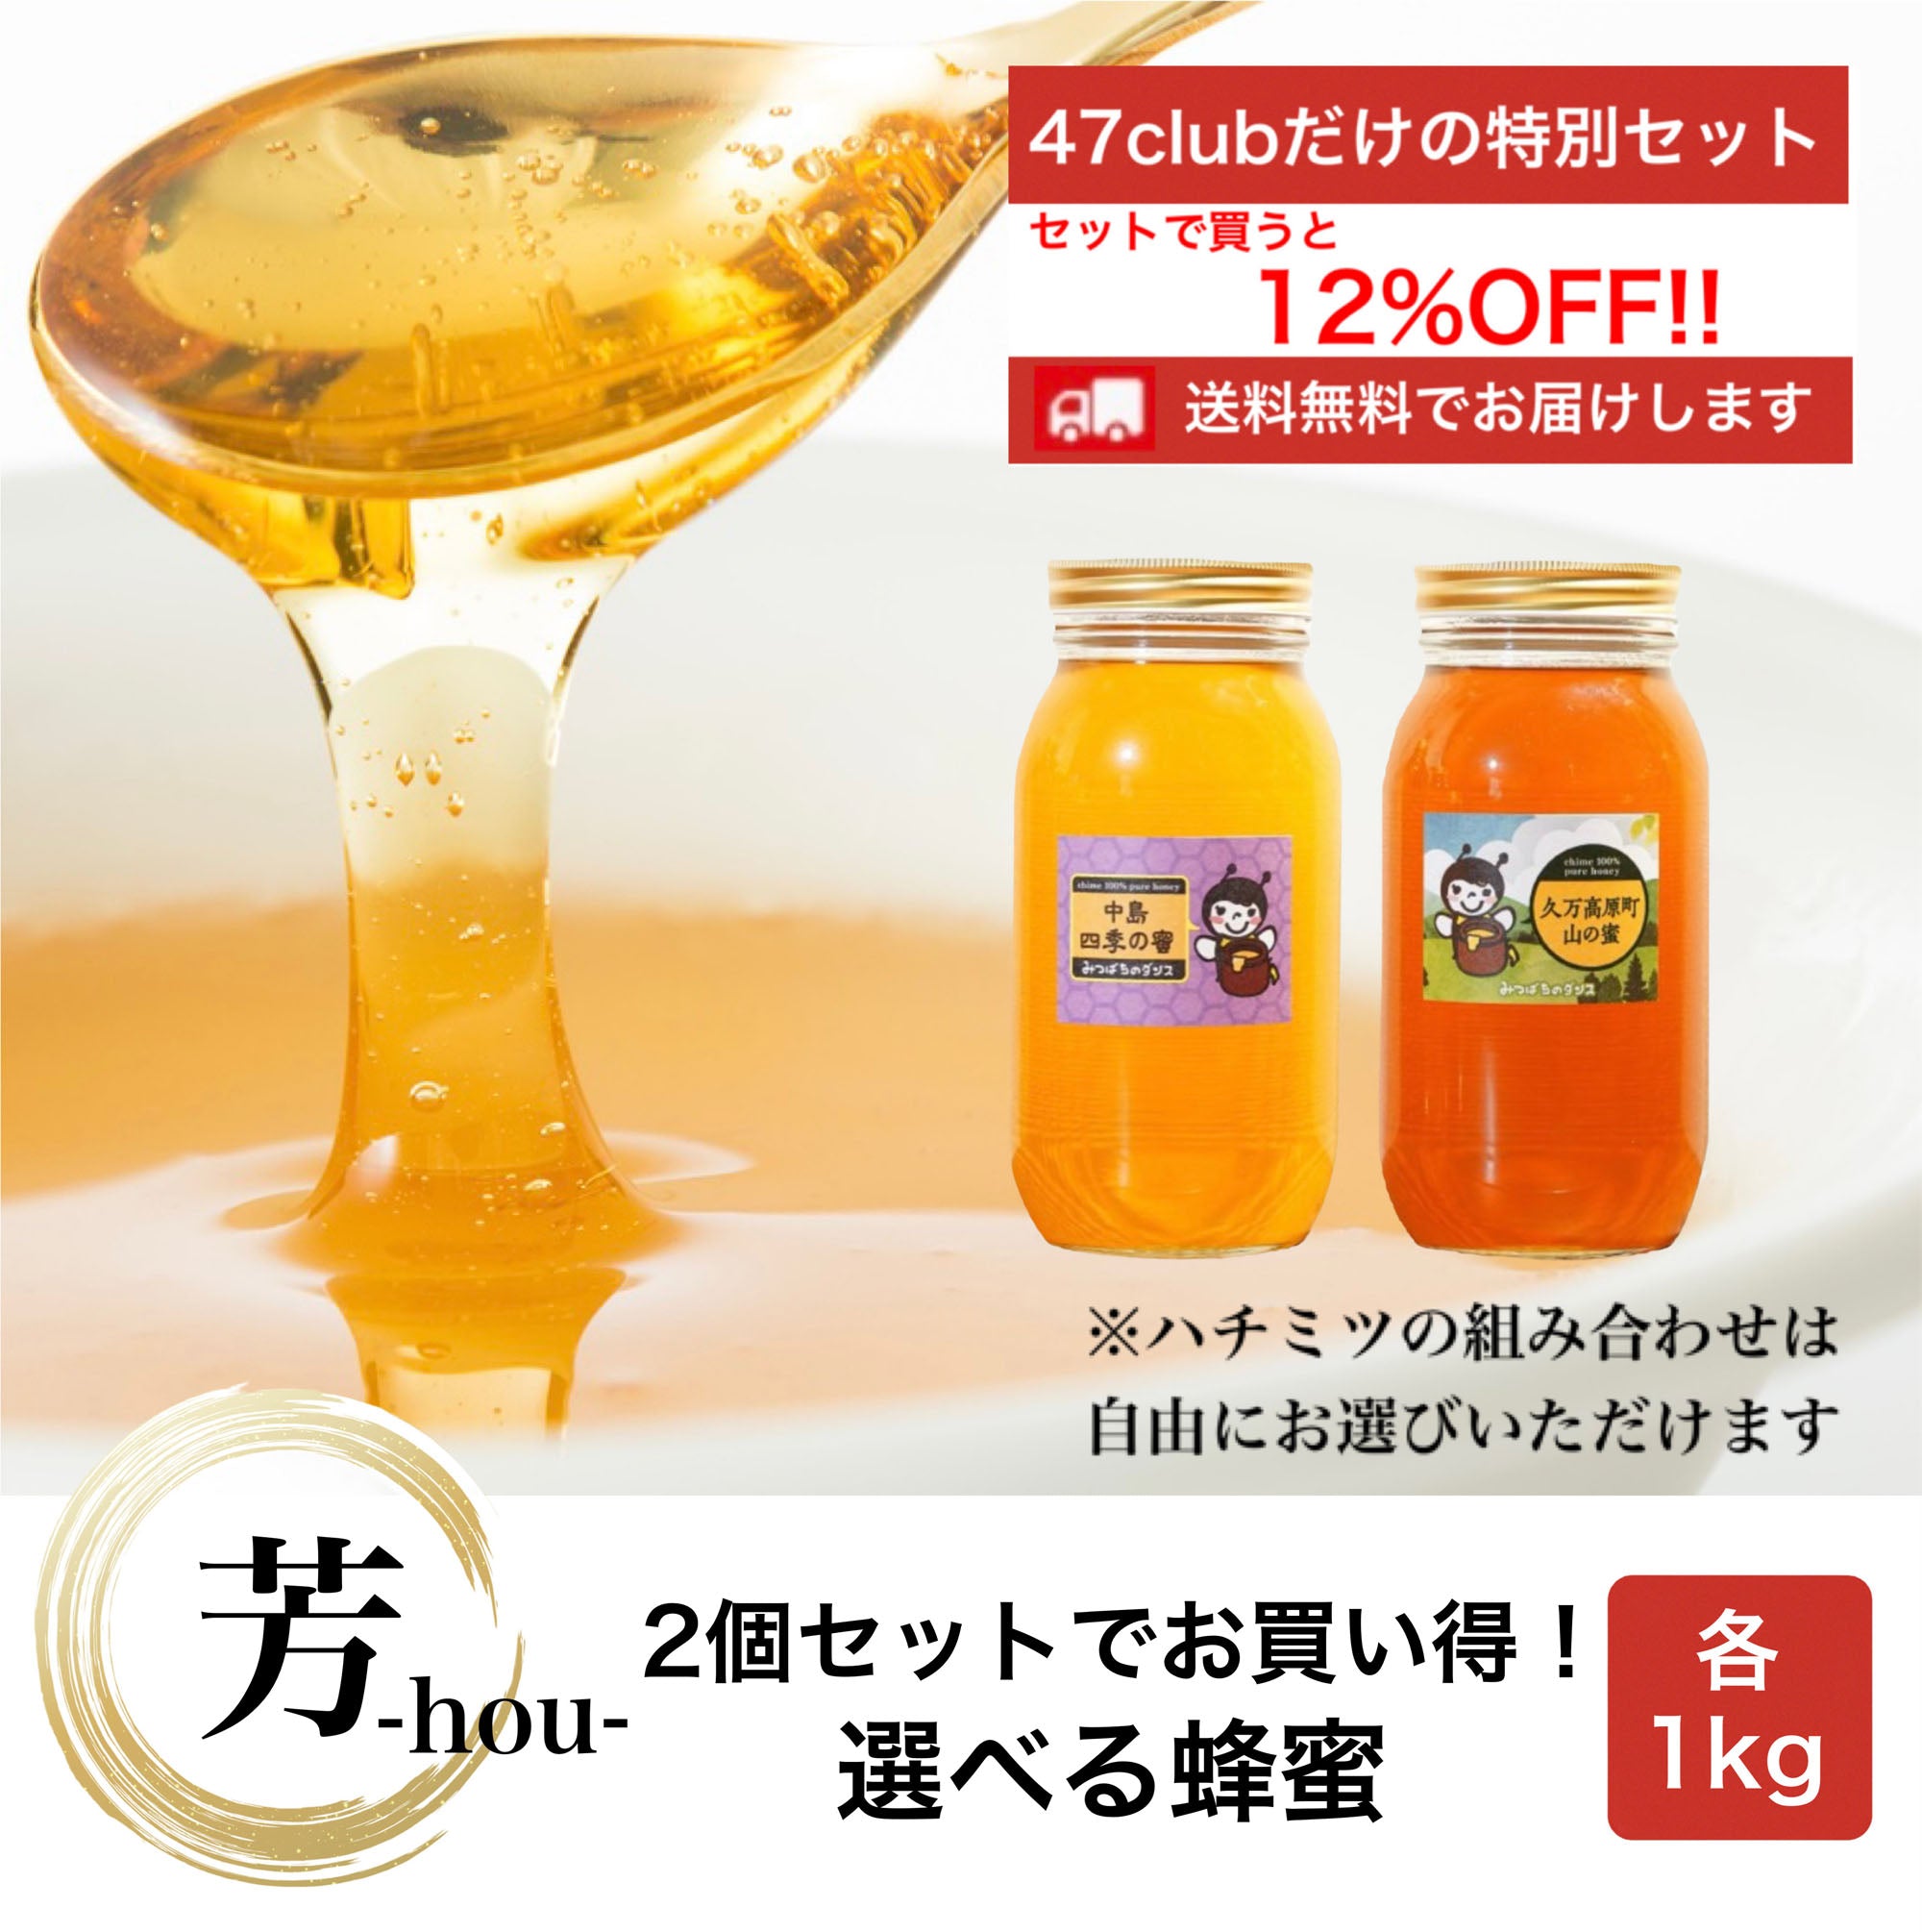 芳-hou-　2個セットでお買い得！　選べる蜂蜜セット　各1kg